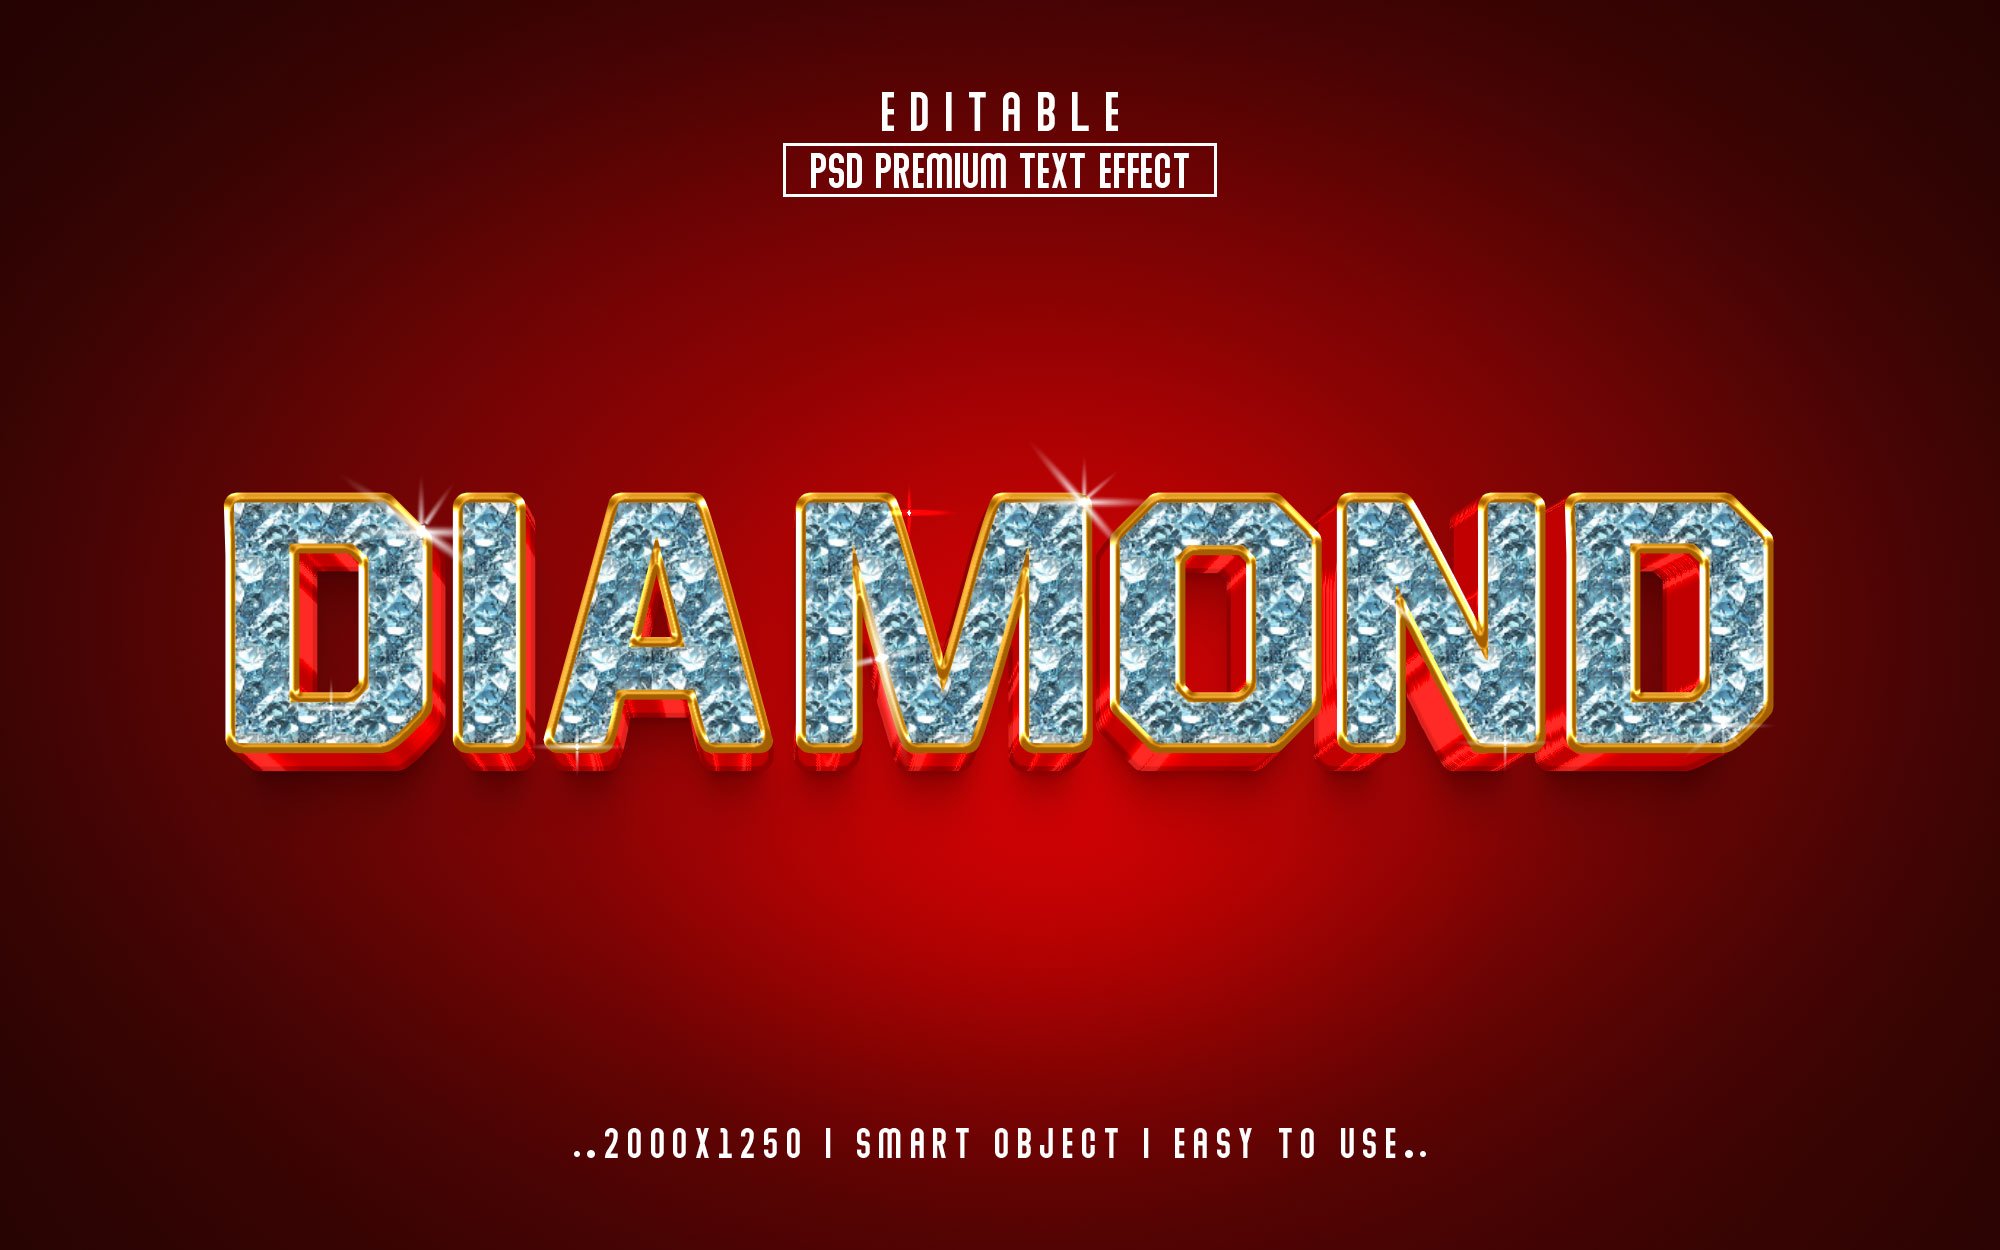 Diamond 3D Editable psd Text Effectcover image.